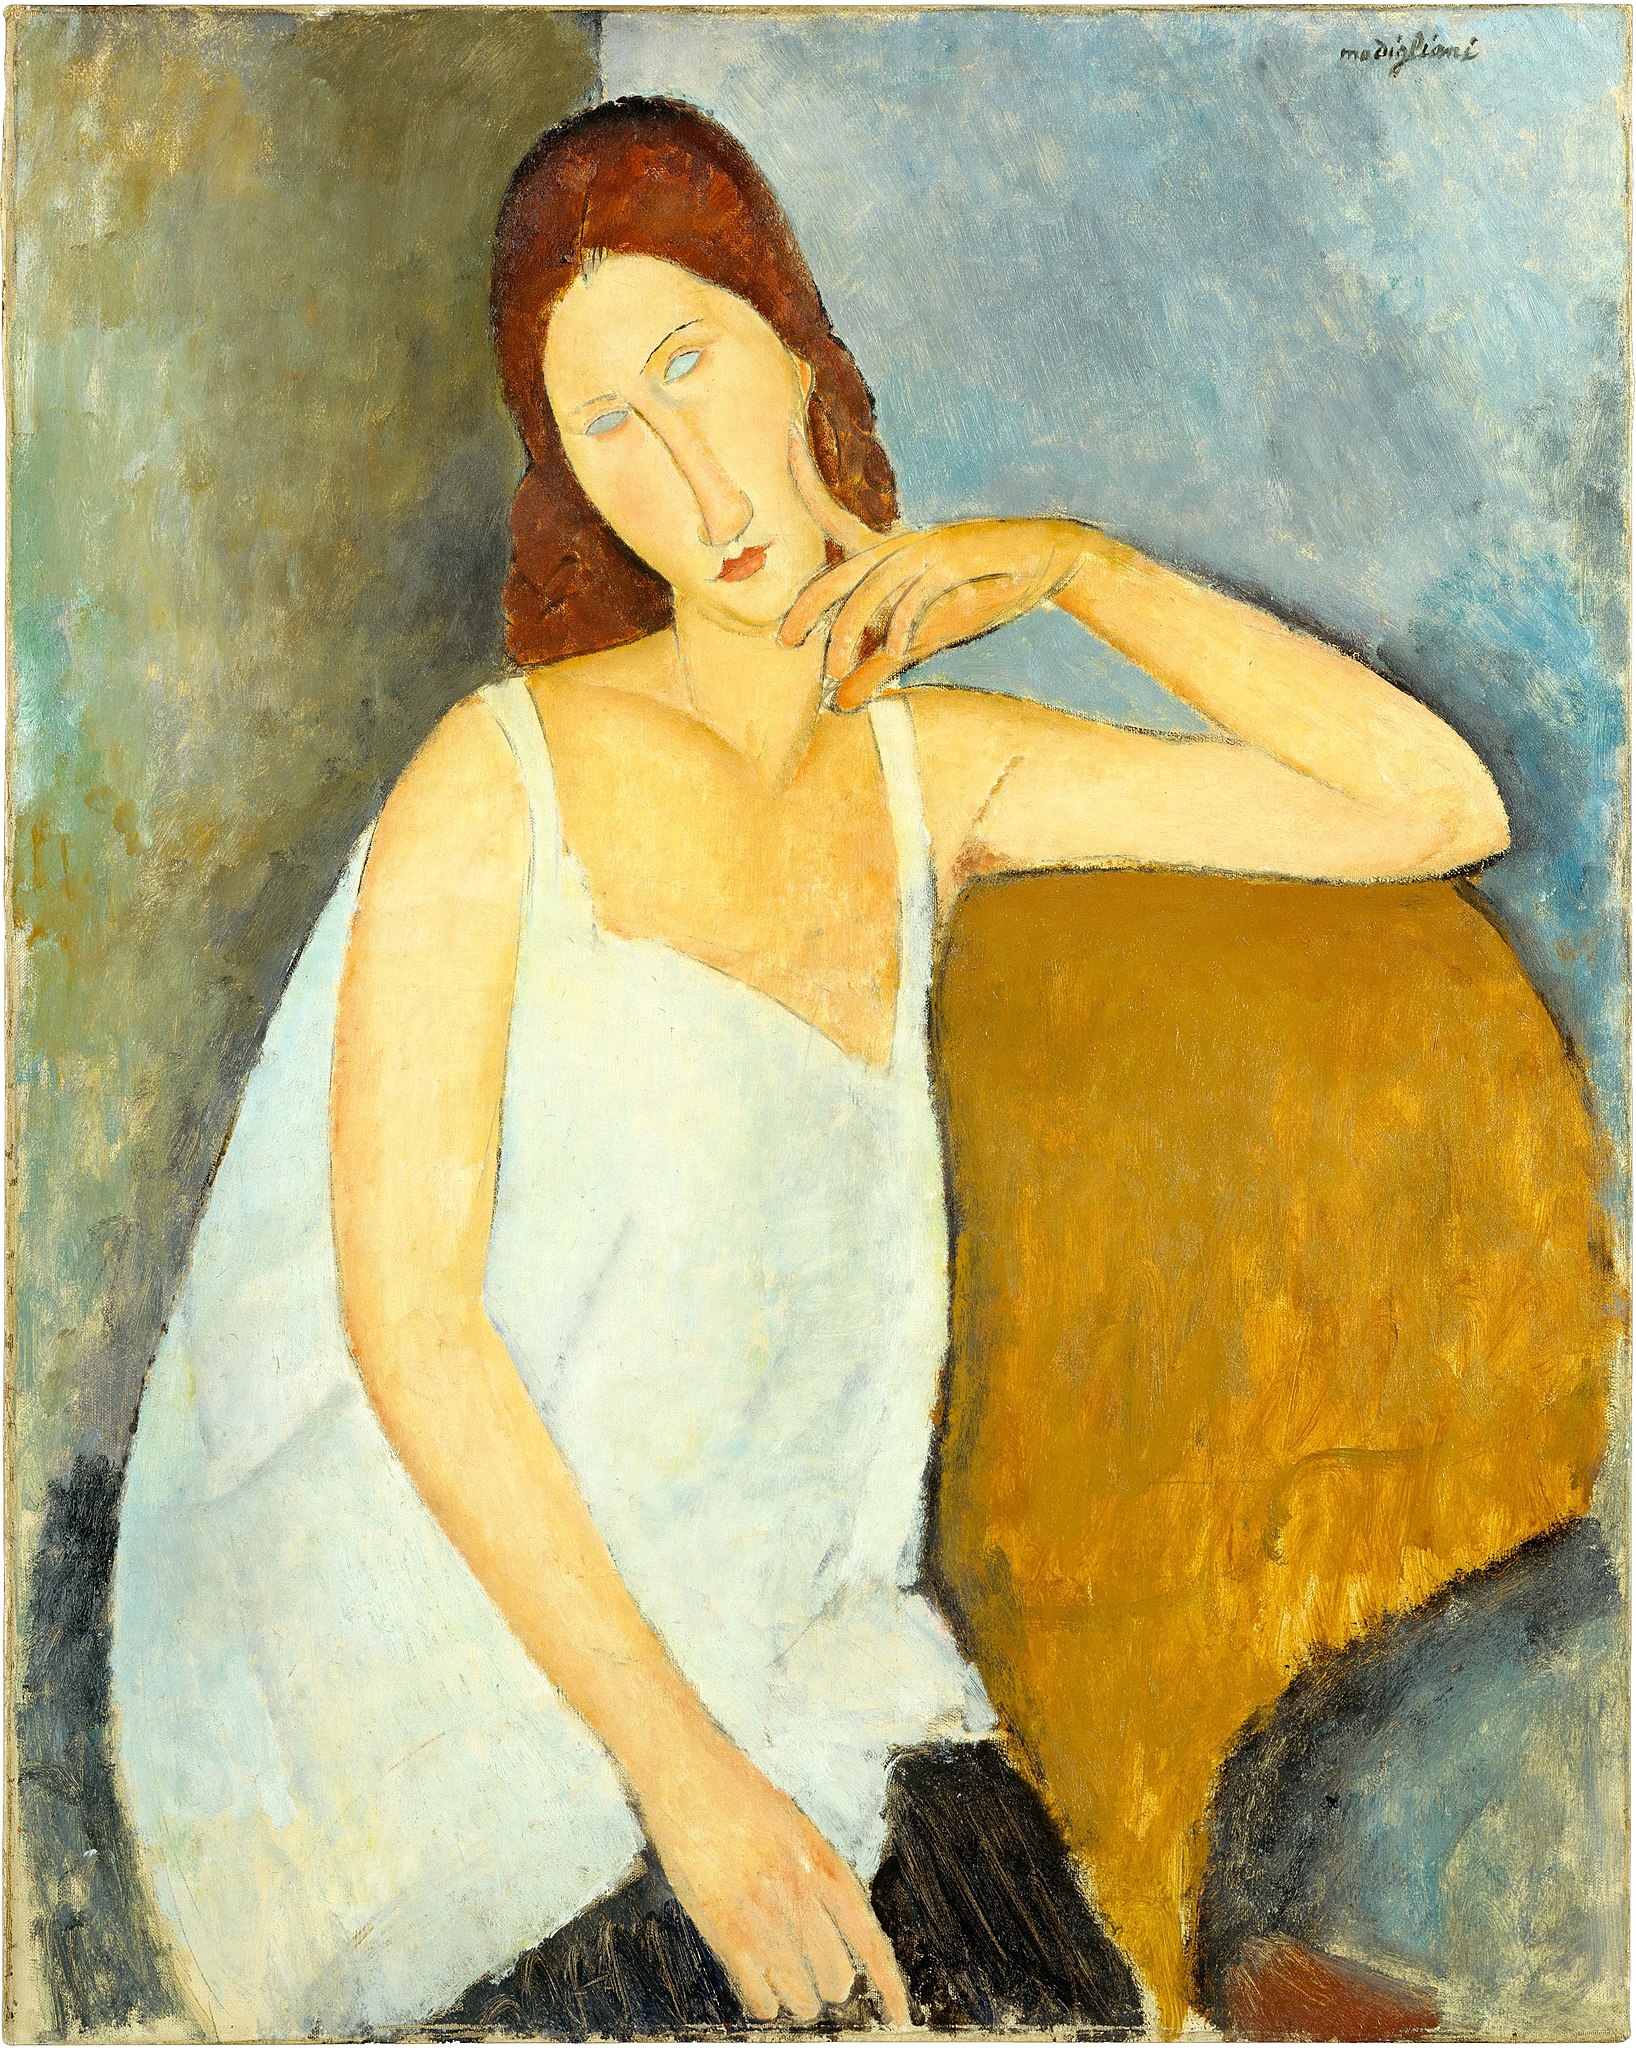 Жан Ебутерн by Amedeo Modigliani - 1919. - 91,4 x 73 cm 